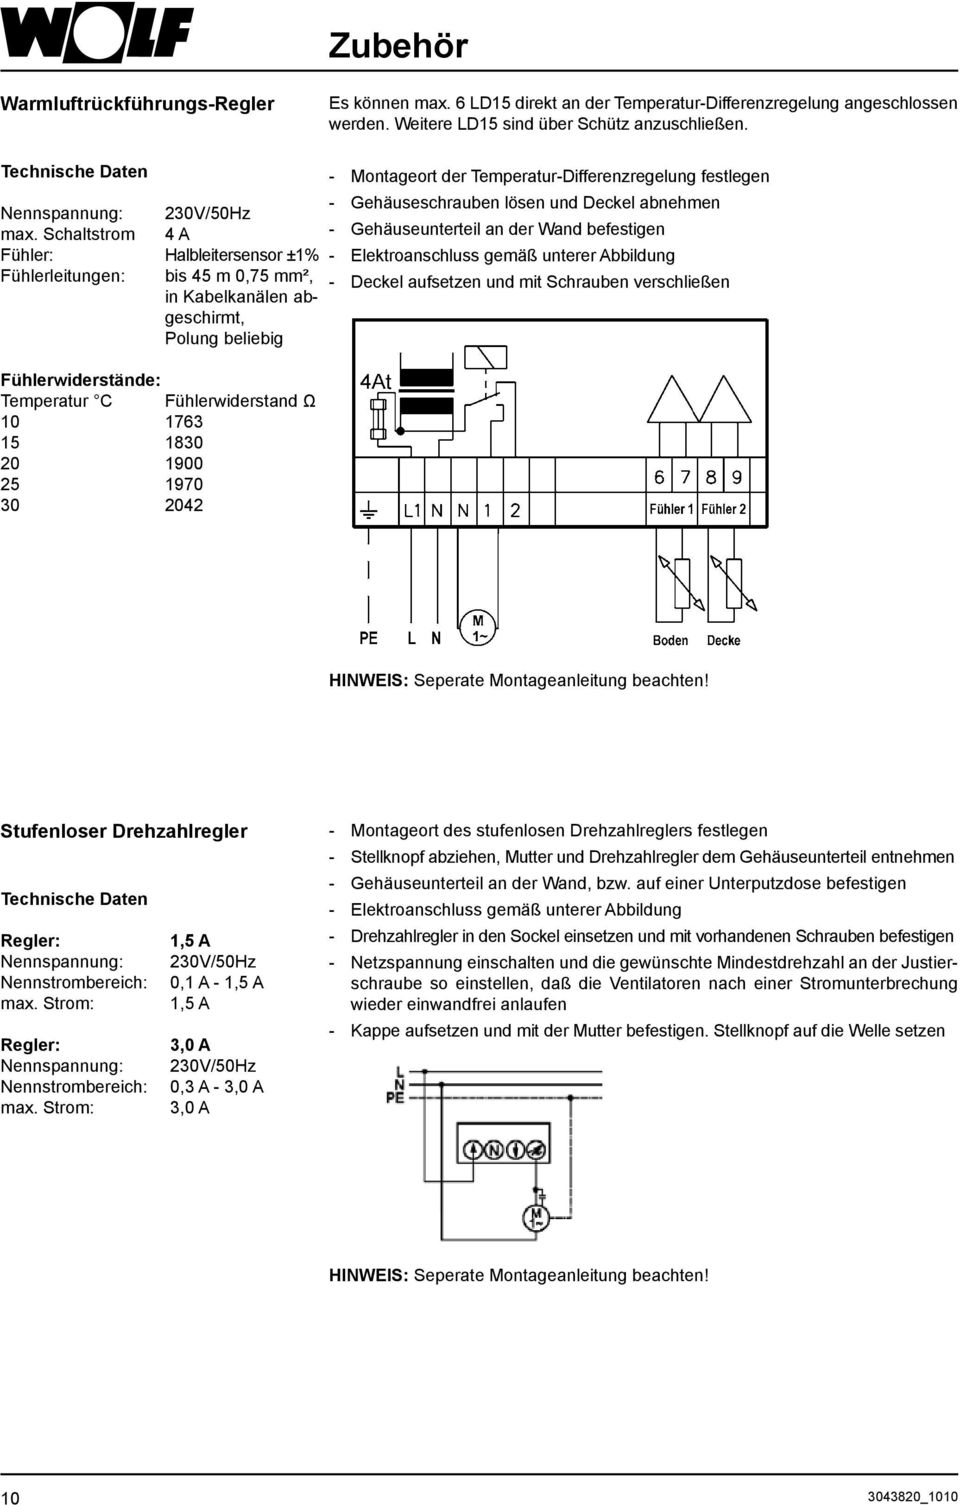 Schaltstrom 4 A - Gehäuseunterteil an der Wand befestigen Fühler: Halbleitersensor ±1% - Elektroanschluss gemäß unterer Abbildung Fühlerleitungen: bis 45 m 0,75 mm², - Deckel aufsetzen und mit